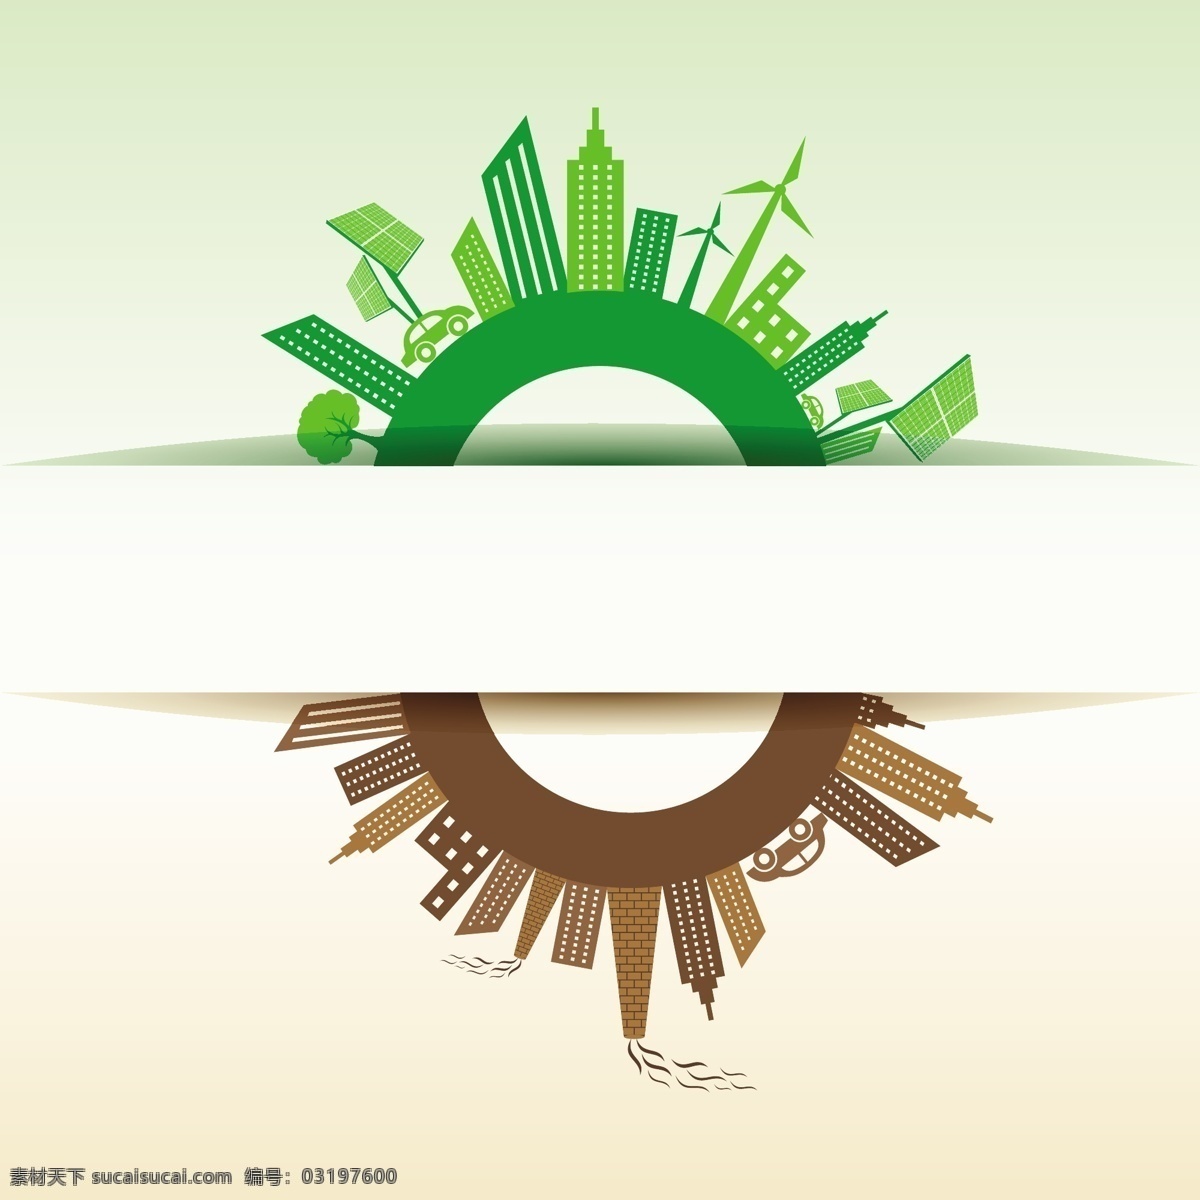 城市建筑 花草 花草背景 环保背景 环保素材 环境污染 建筑家居 节能 绿色 绿色能源 绿色城市 绿叶 绿色环保 生态 手绘 时尚 生物世界 矢量 枝叶 能源 装饰素材 建筑设计